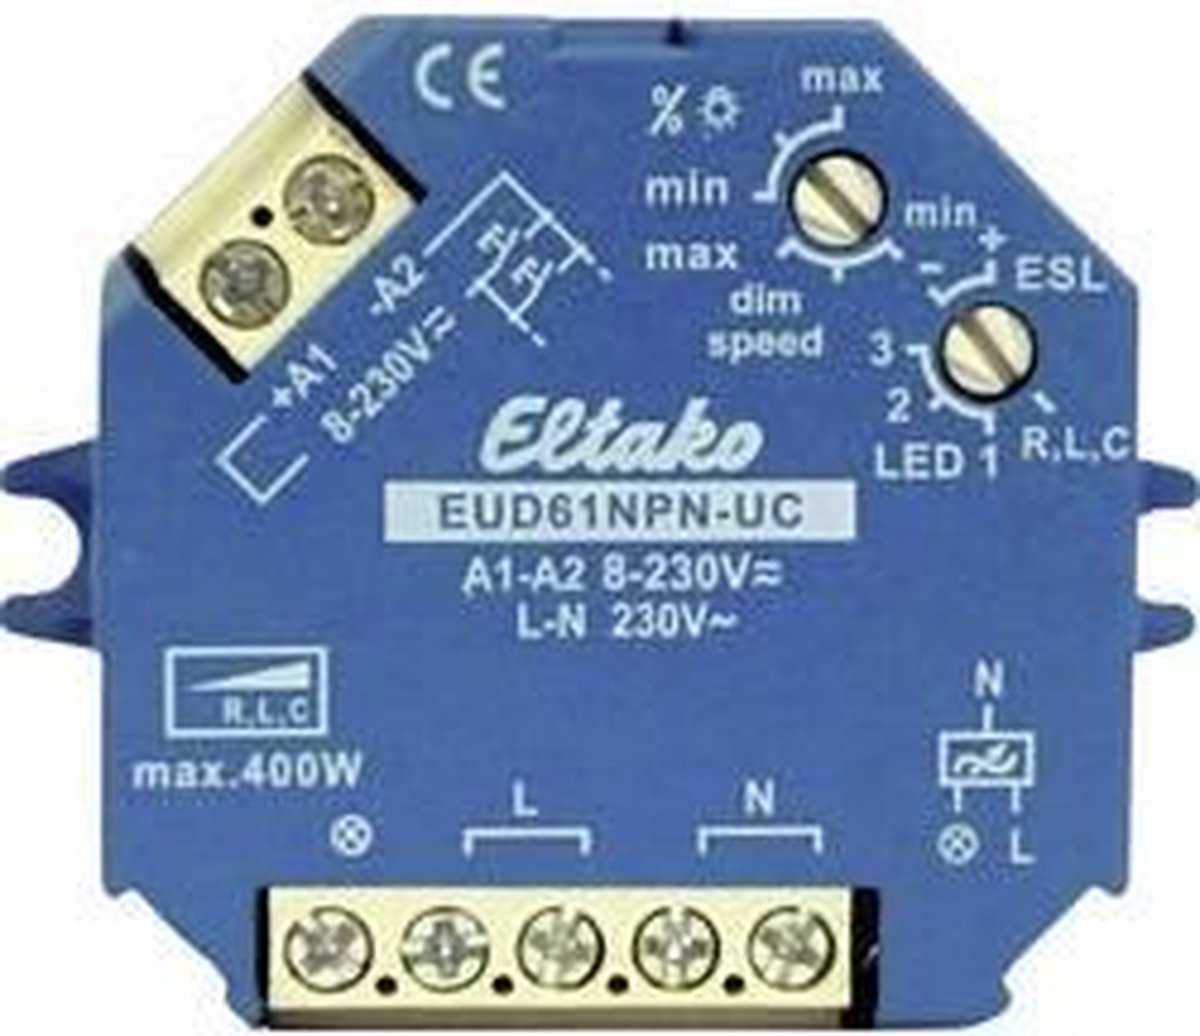 Eltako EUD61NPN-UC Dimmer (opbouw),Dimmer (inbouw) Geschikt voor lampen: Gloeilamp, Spaarlamp, Halogeenlamp, TL-buis - Azul